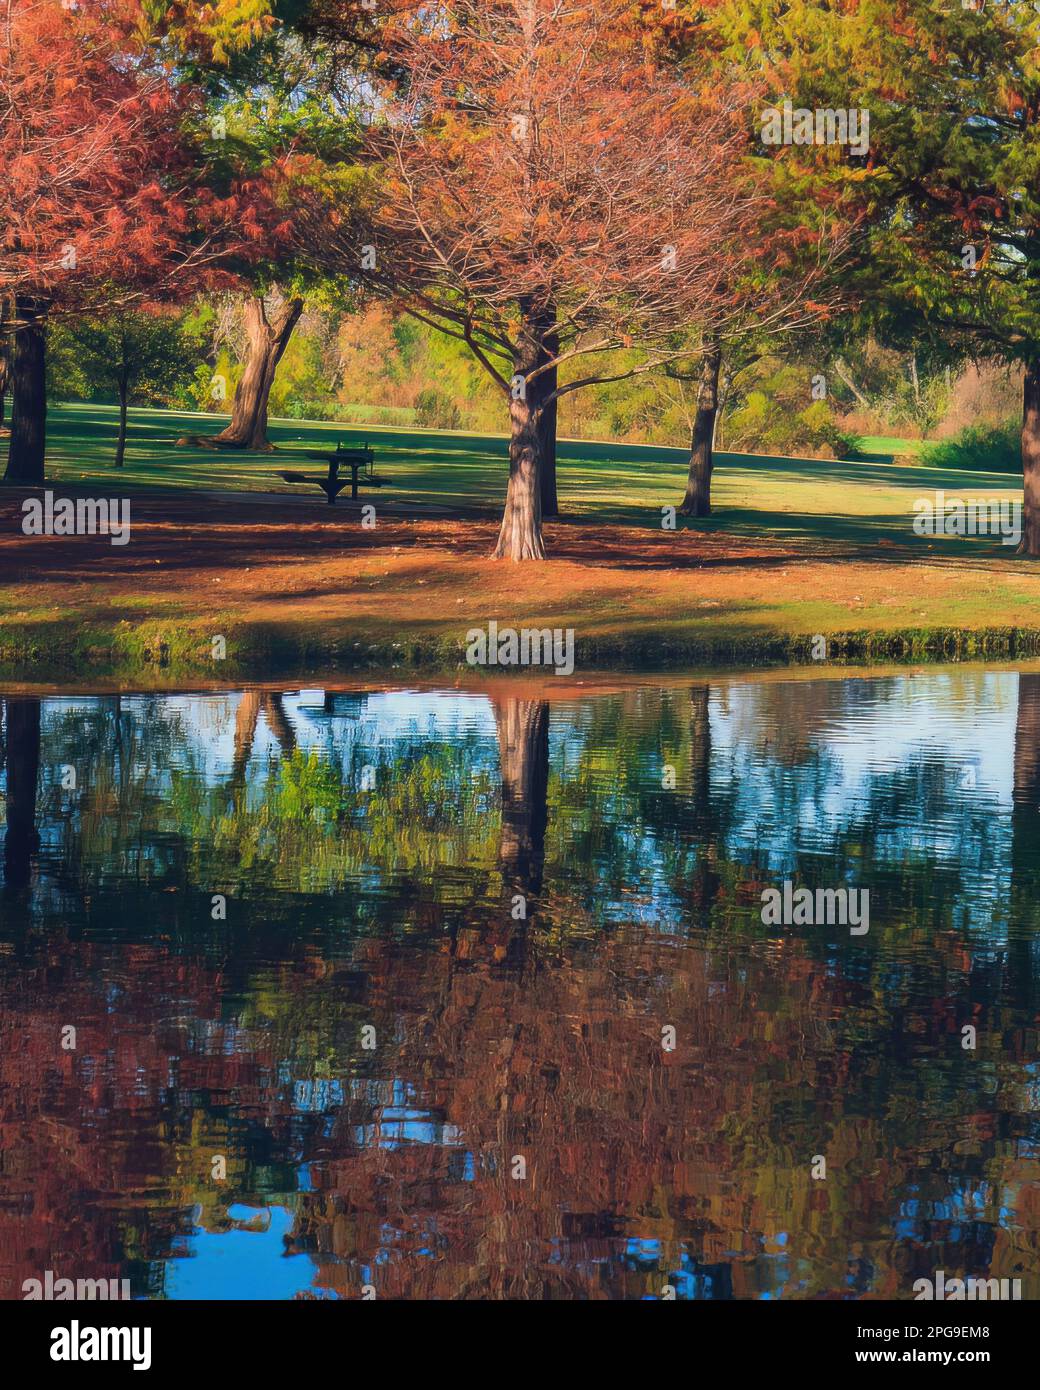 Halten Sie die atemberaubende Schönheit des Herbstes mit diesem Foto von Crowley Park, Richardson, Texas, fest. Der ruhige Teich spiegelt die lebendigen Farben der fa wider Stockfoto